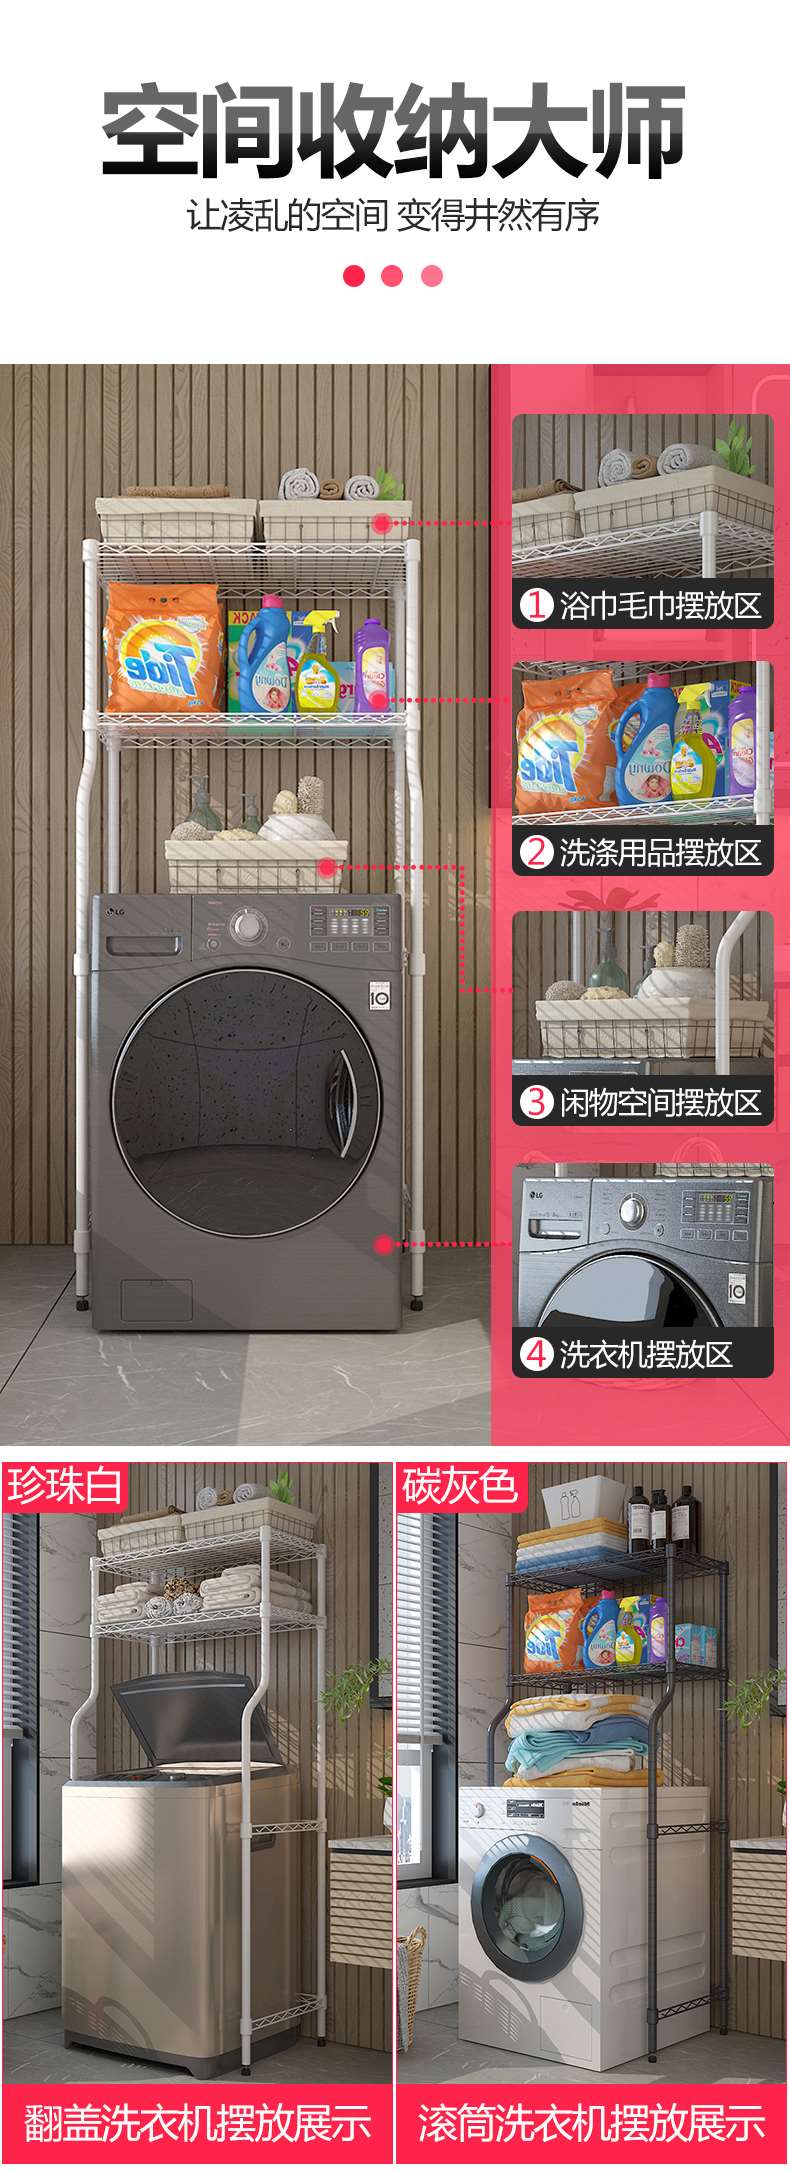 洗衣機架CJ-A1250_03